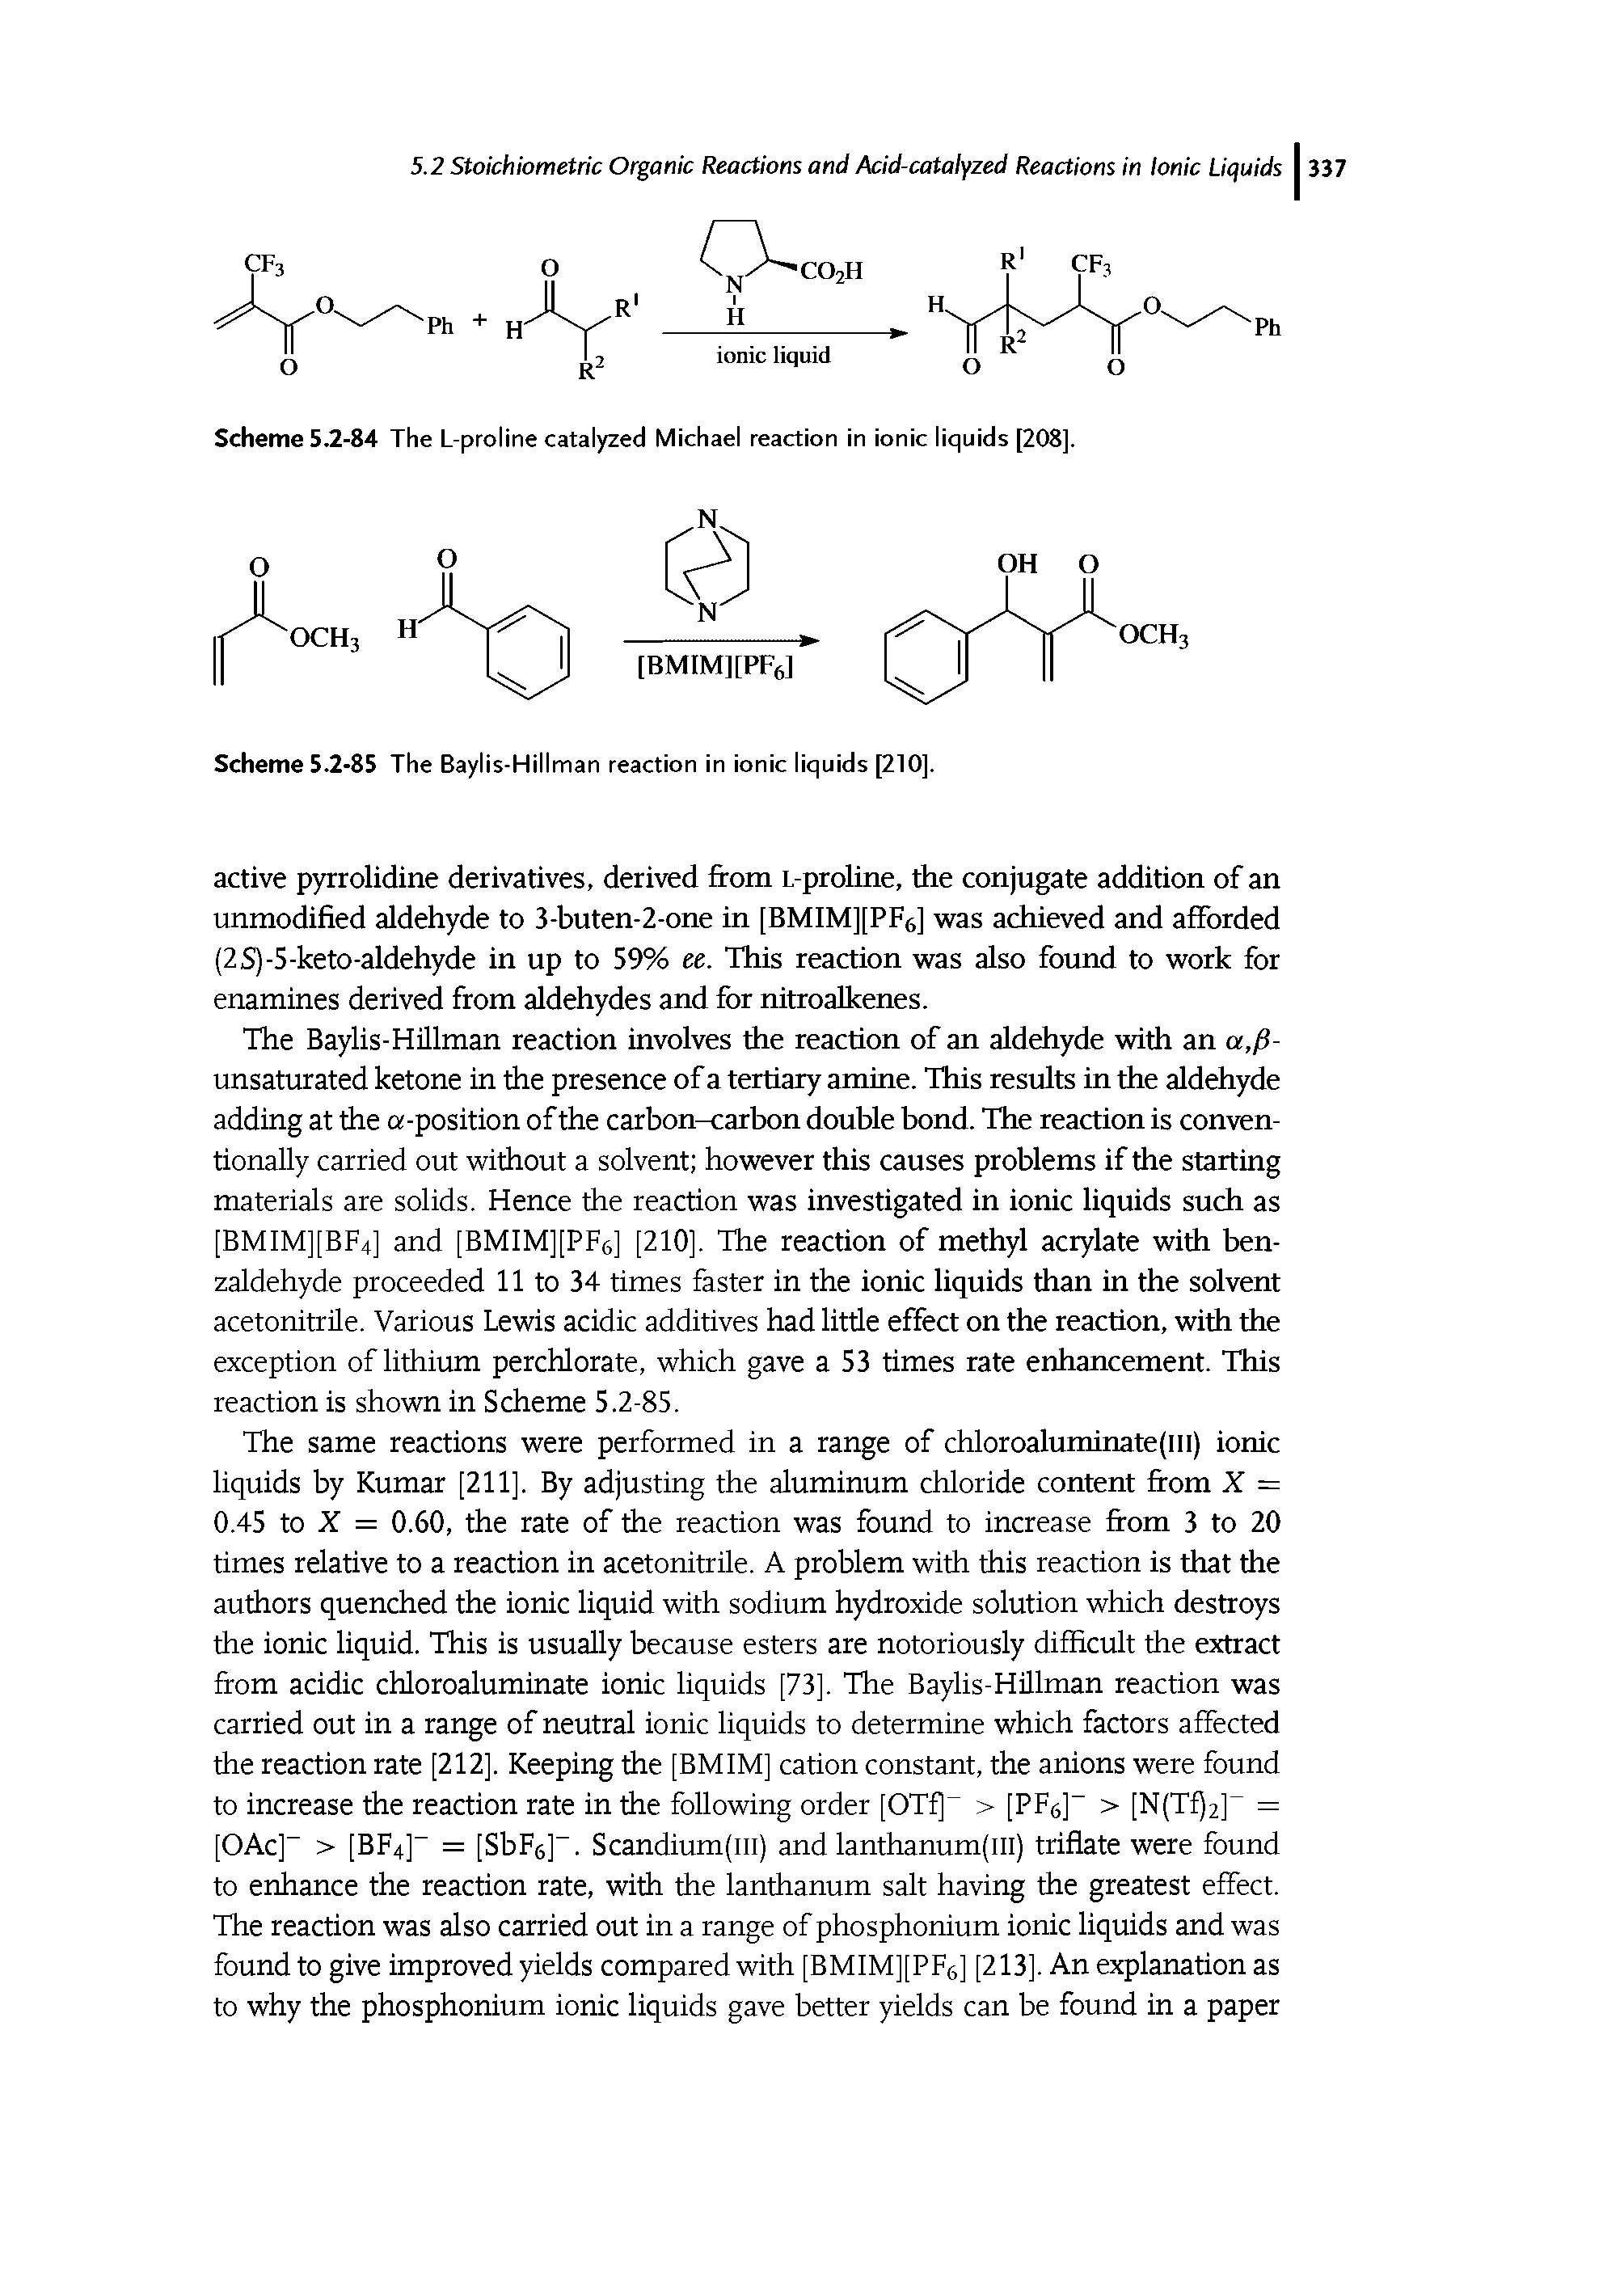 Scheme 5.2-84 The L-proline catalyzed Michael reaction in ionic liquids [208].